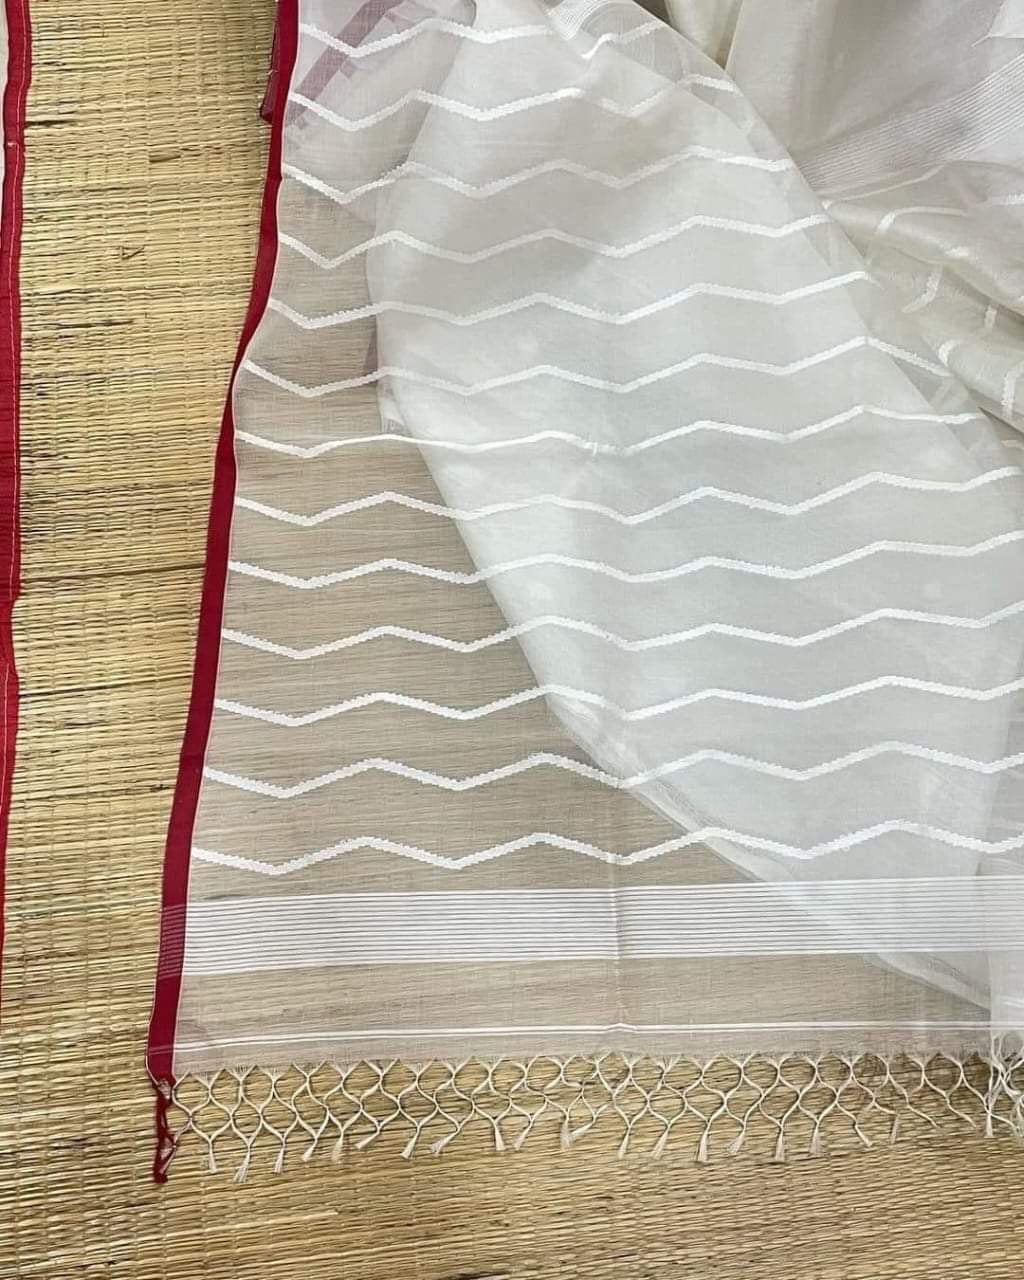 Pujor inspired women saree Indian sari